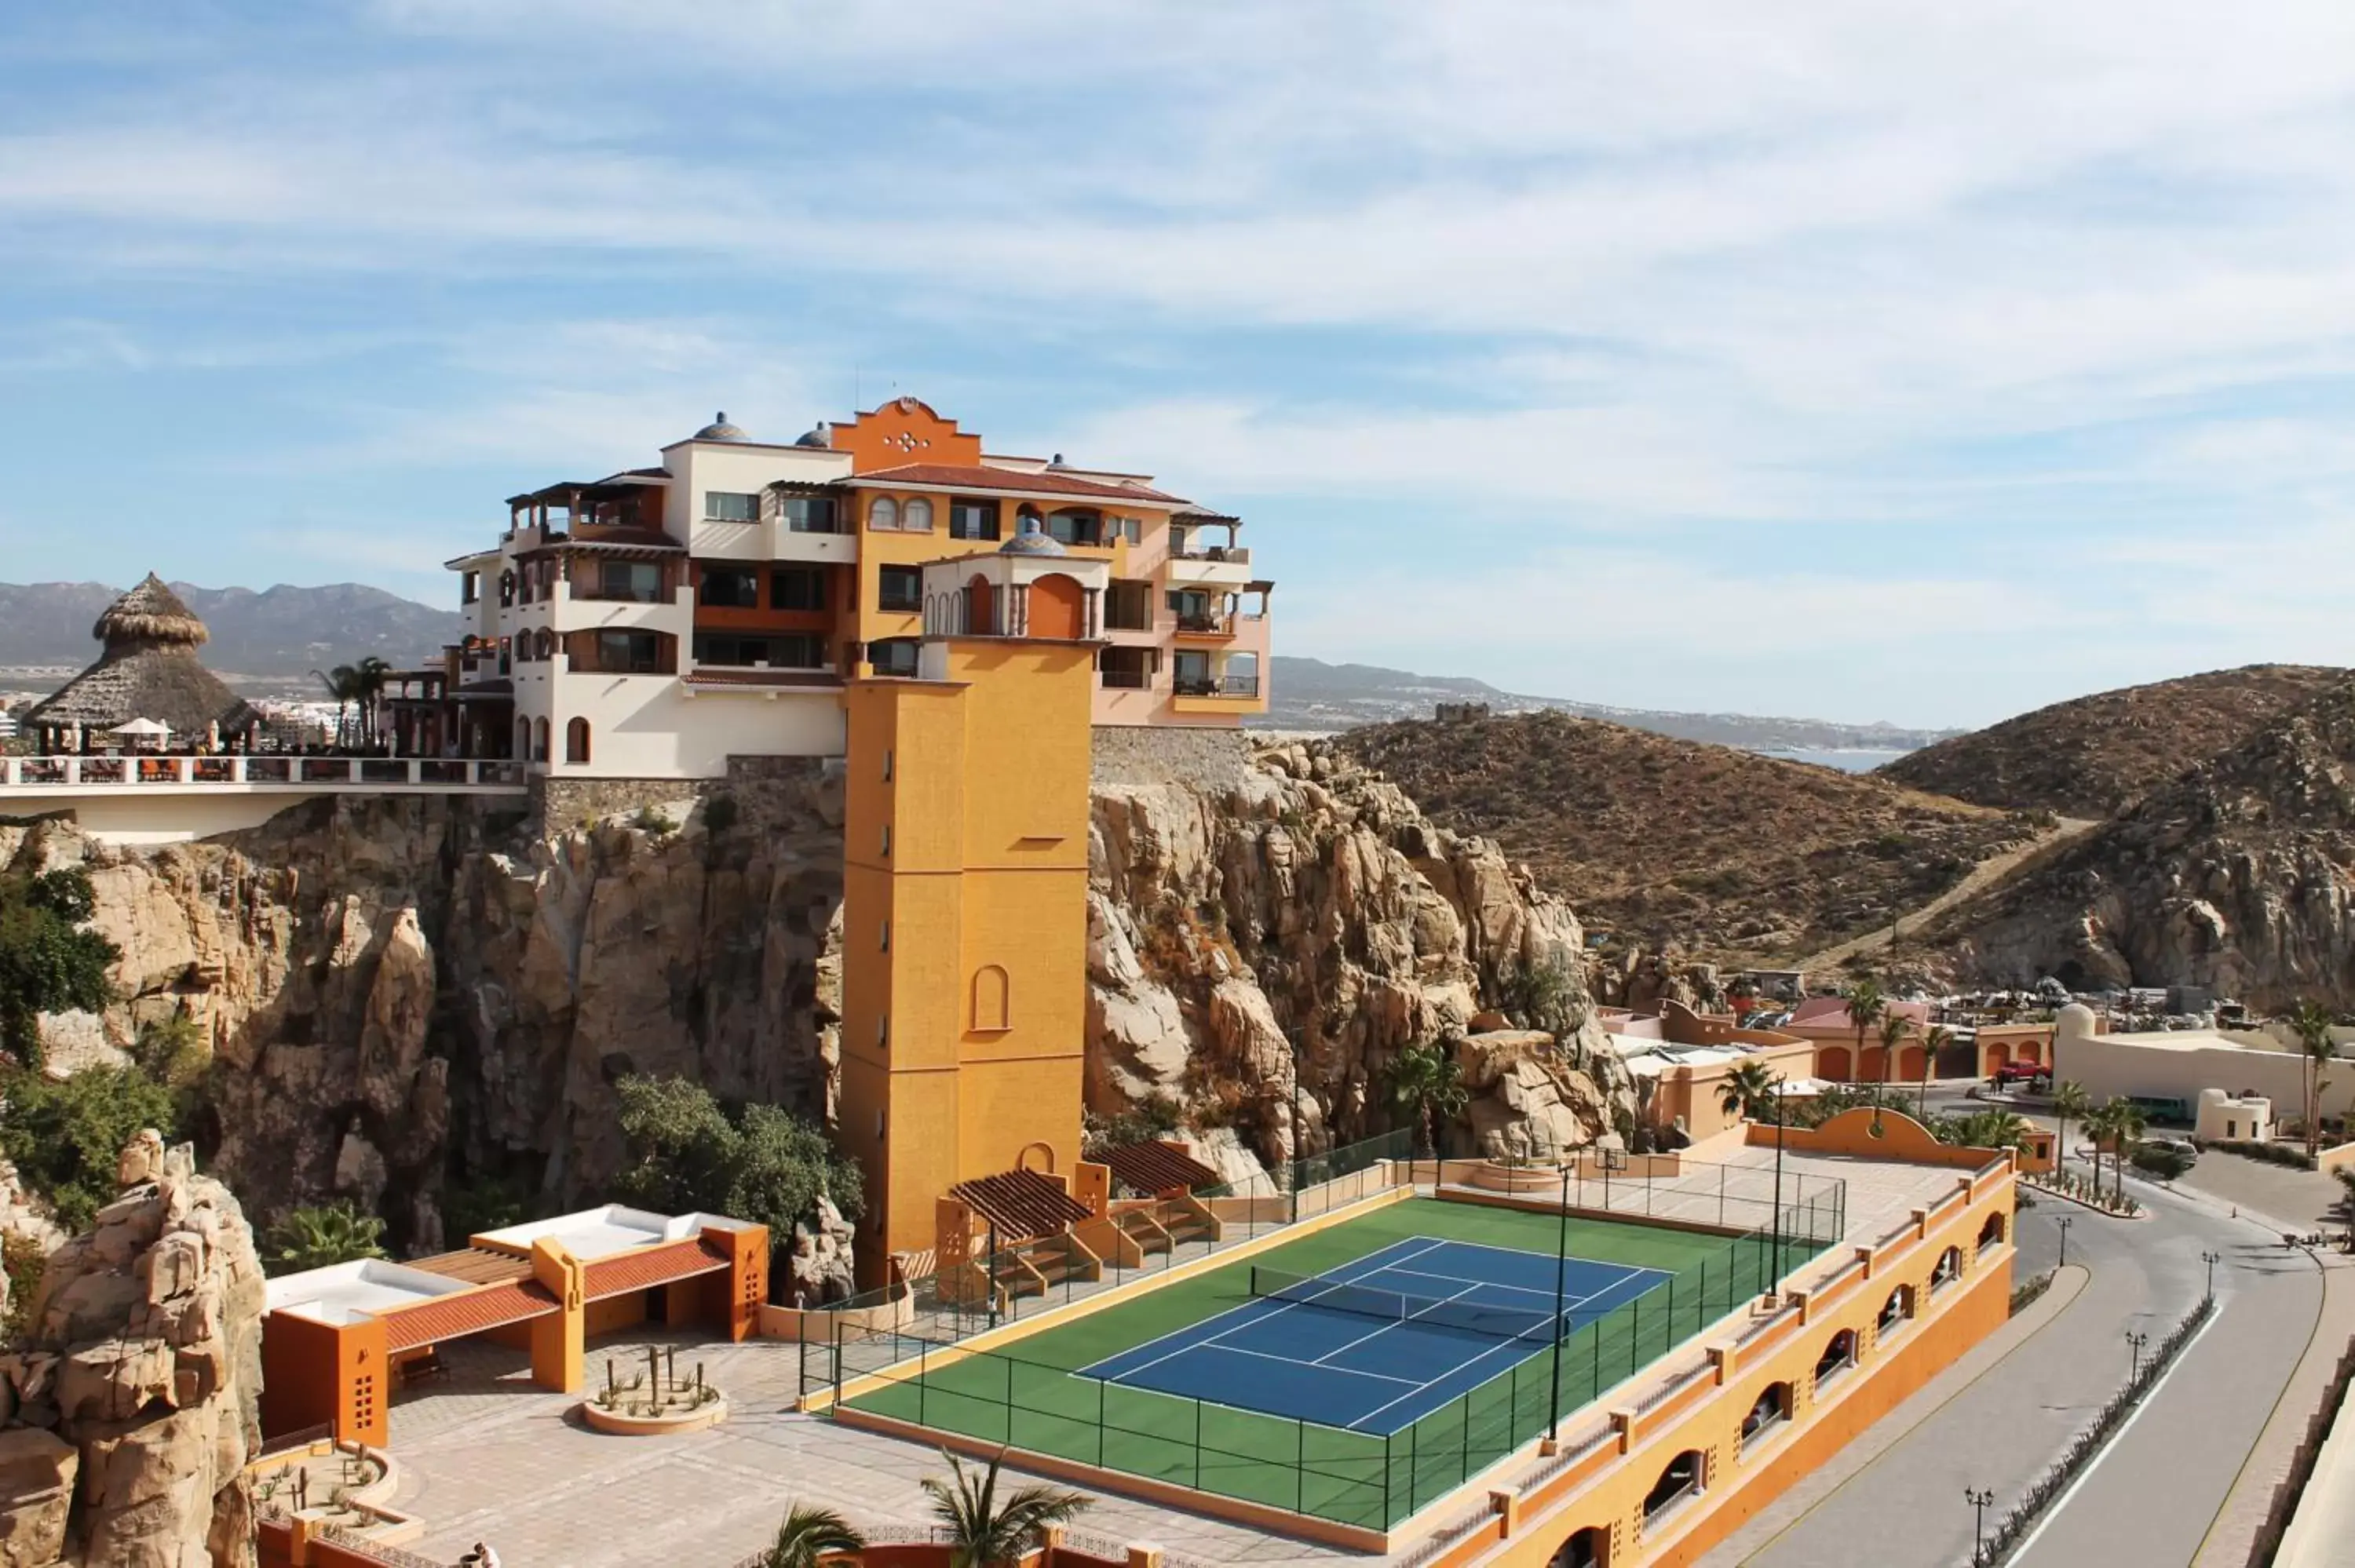 Tennis court, Pool View in Playa Grande Resort